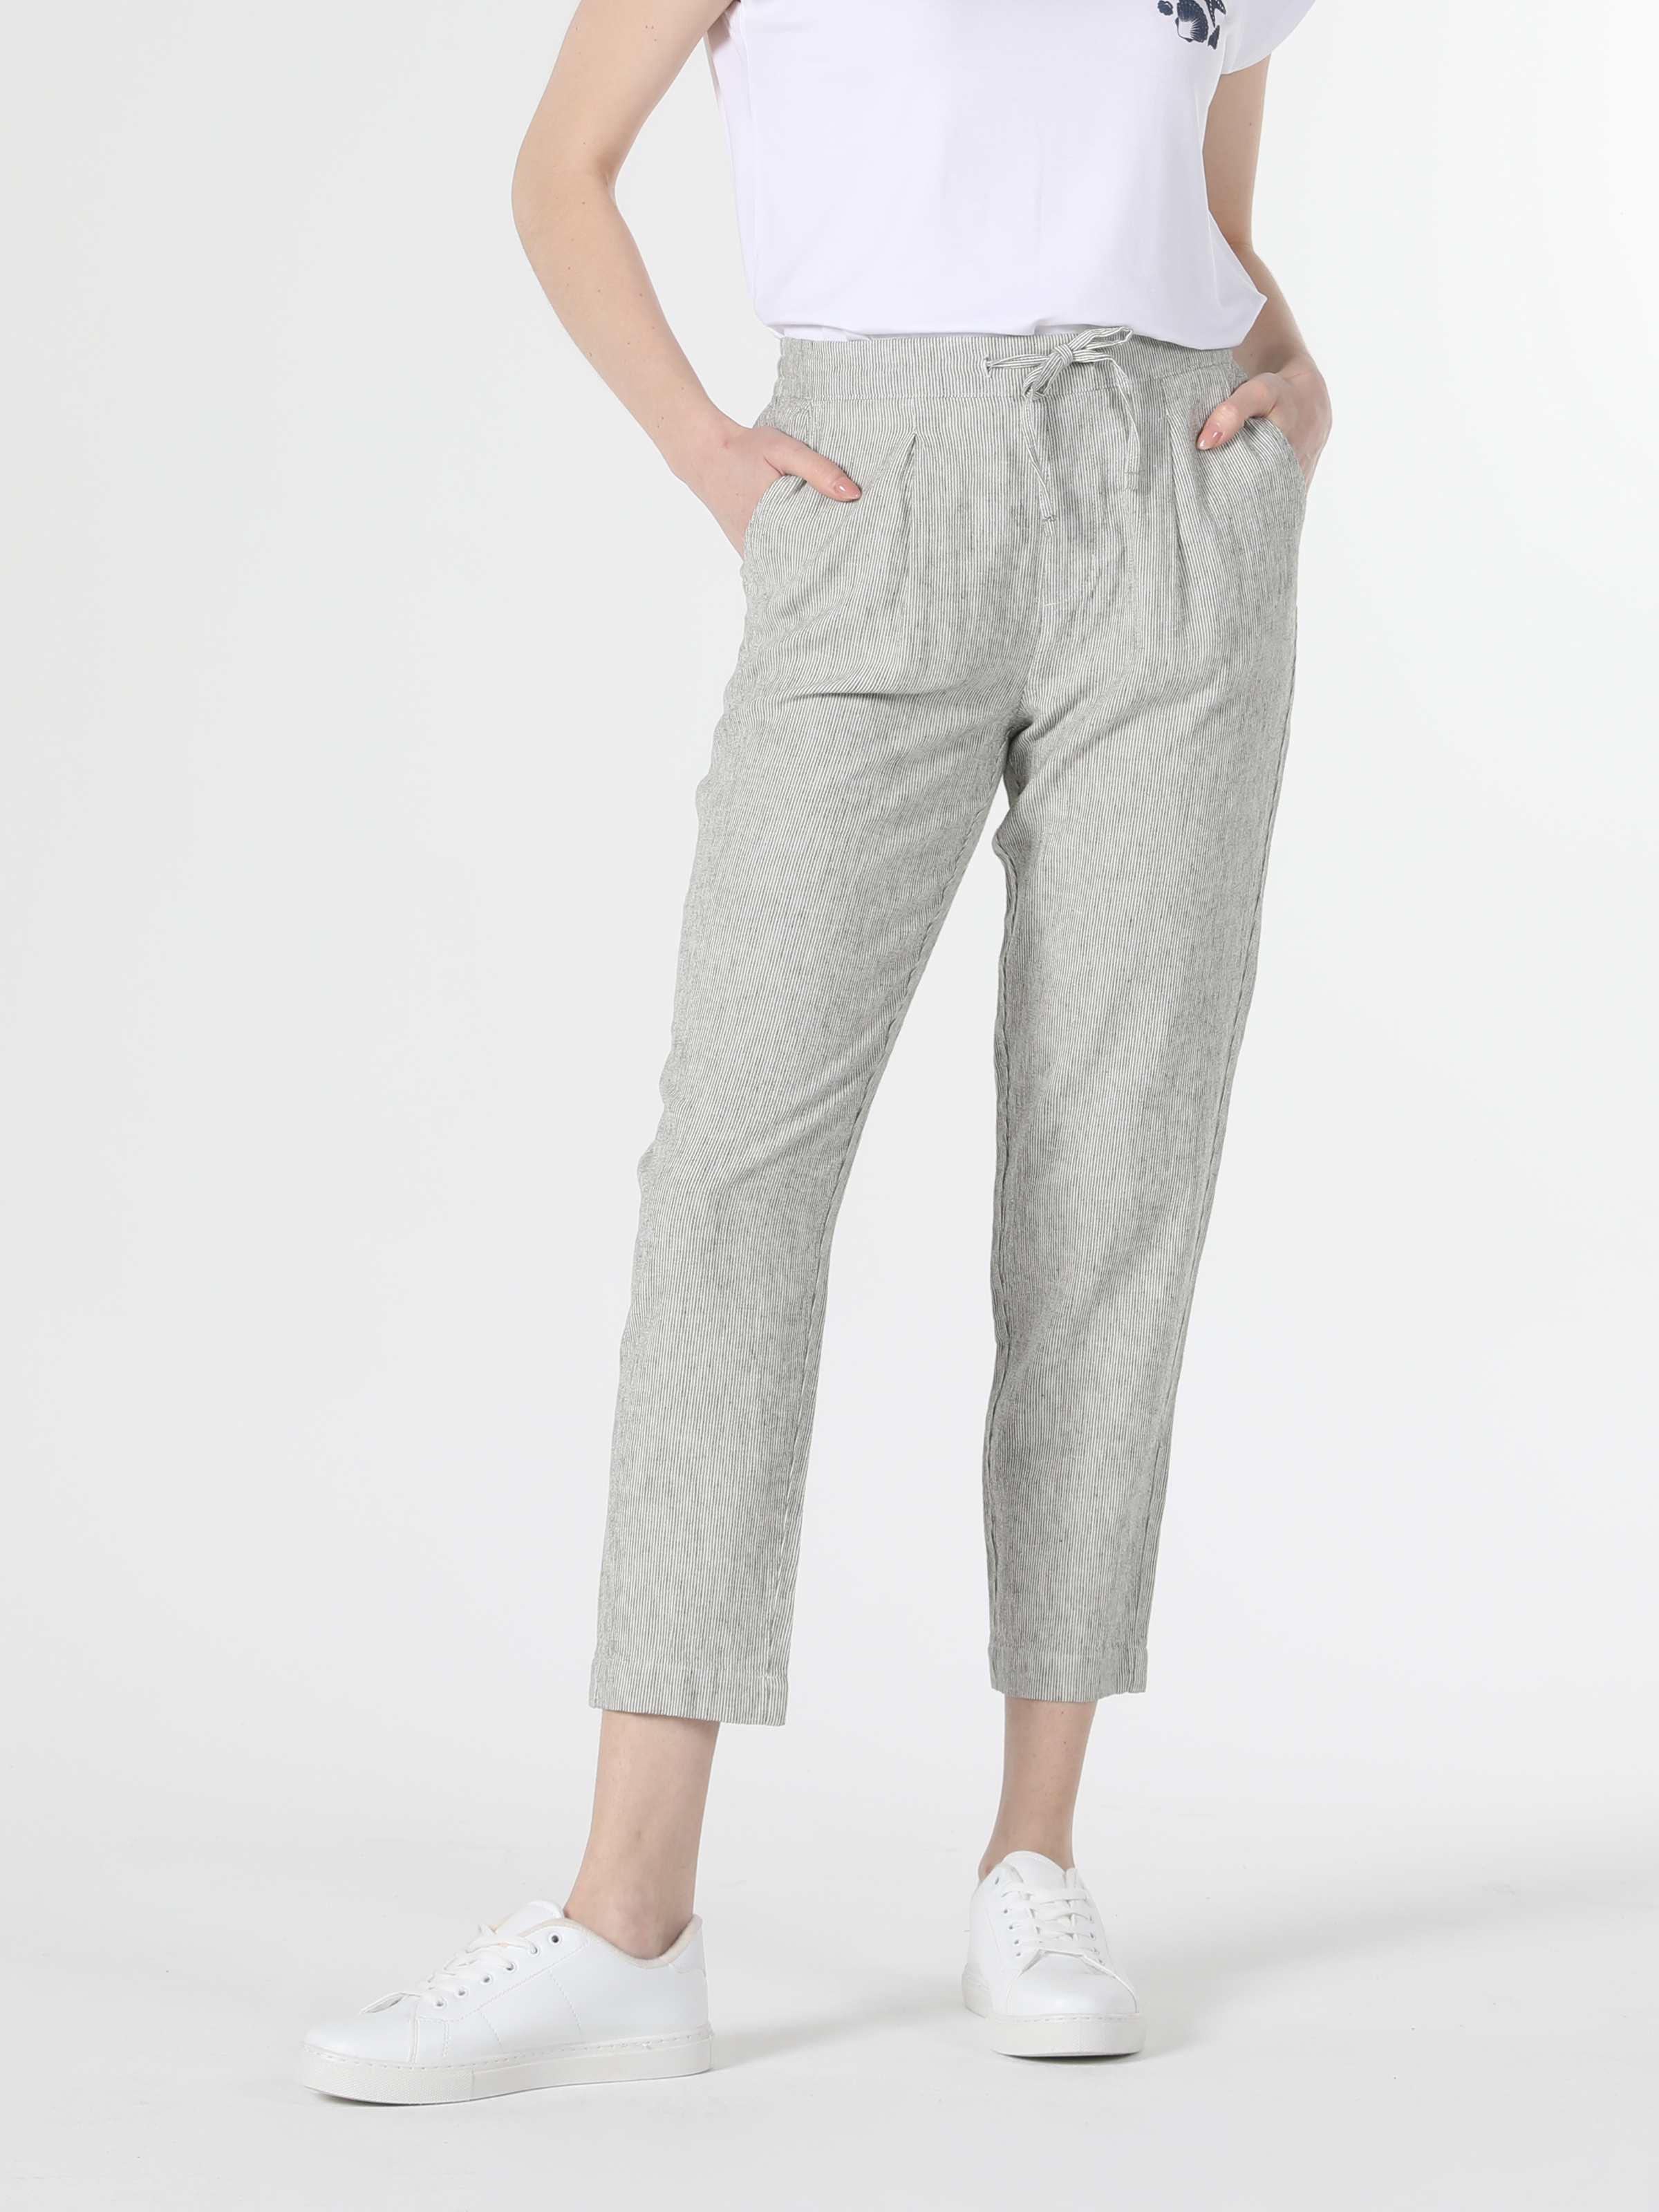 Afficher les détails de Pantalon Femme Kaki Taille Basse Coupe Regular Jambe Droite